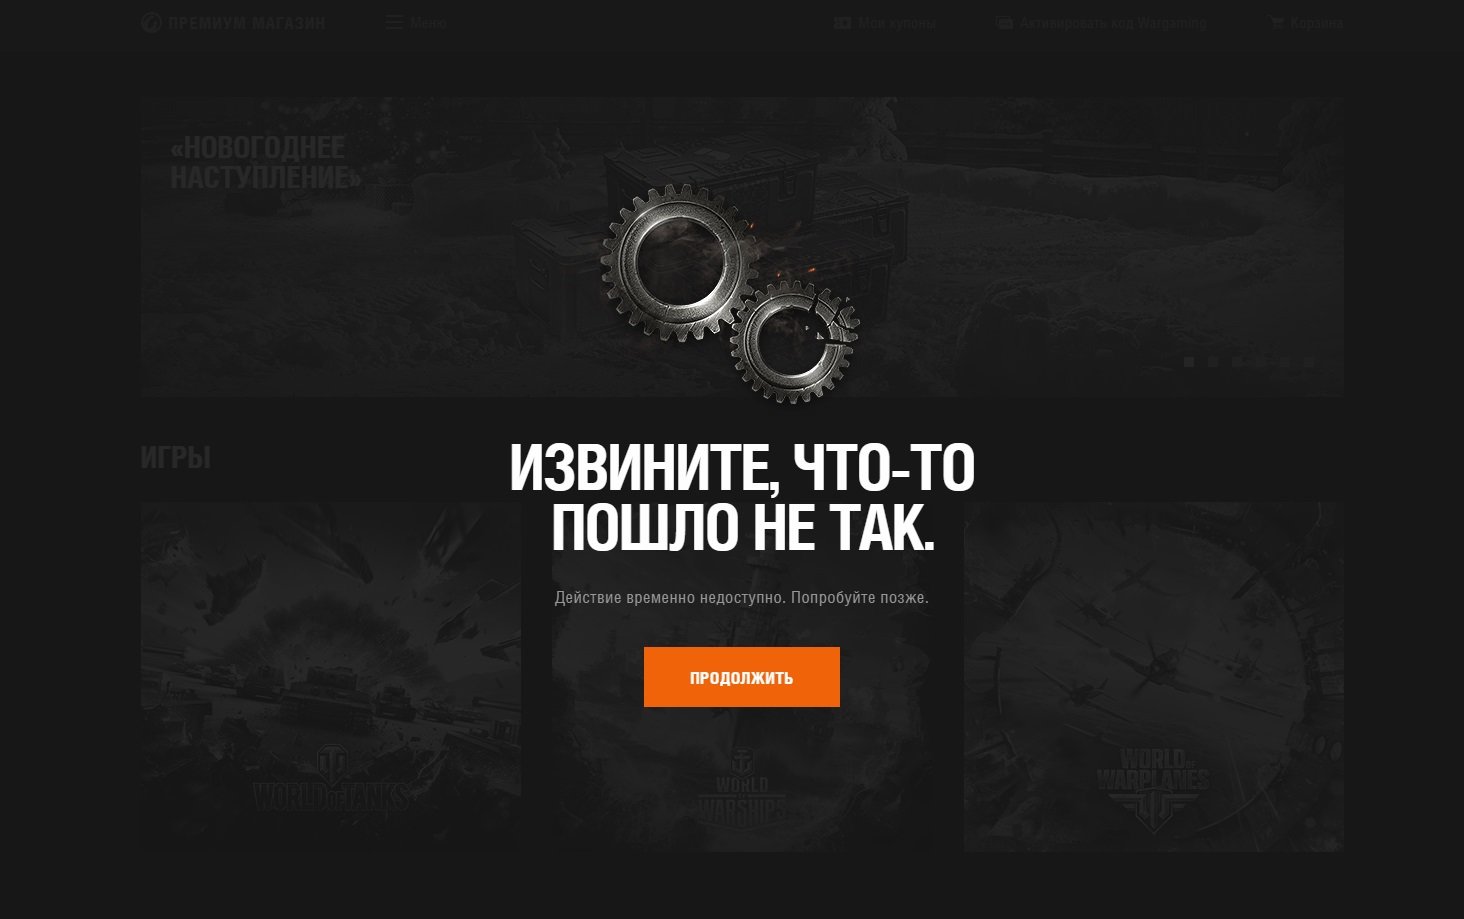 Steam казахстан провайдер временно недоступен попробуйте позднее фото 55